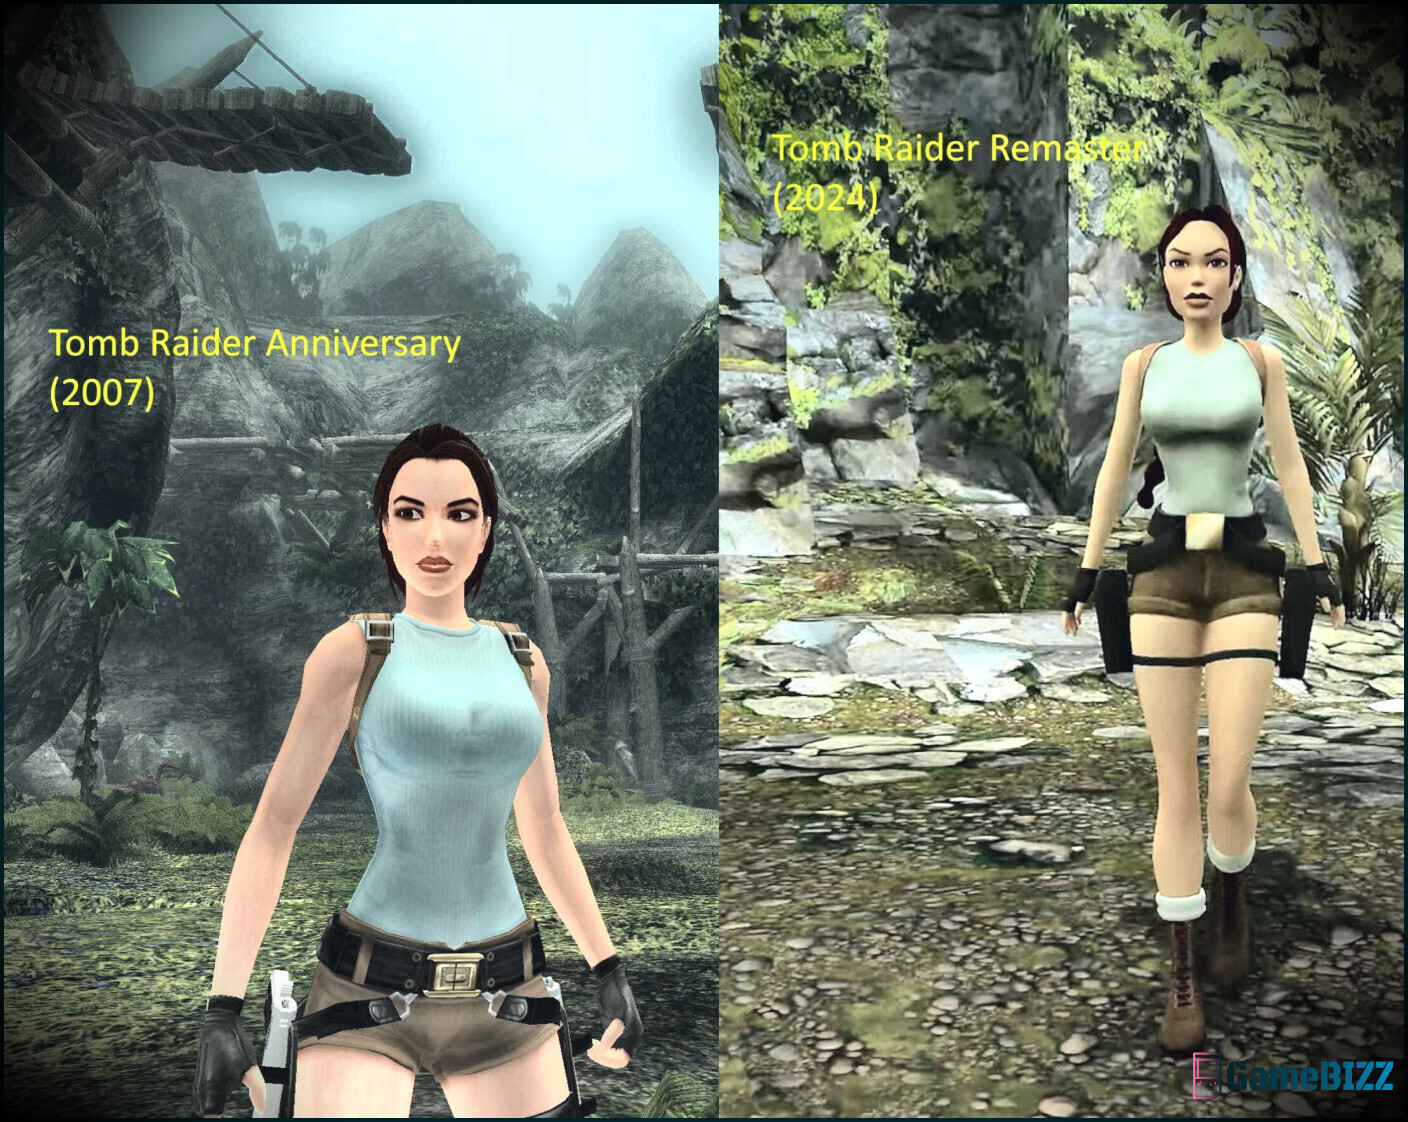 Tomb Raider Remastered Trilogy bestätigt endlich die moderne Steuerung